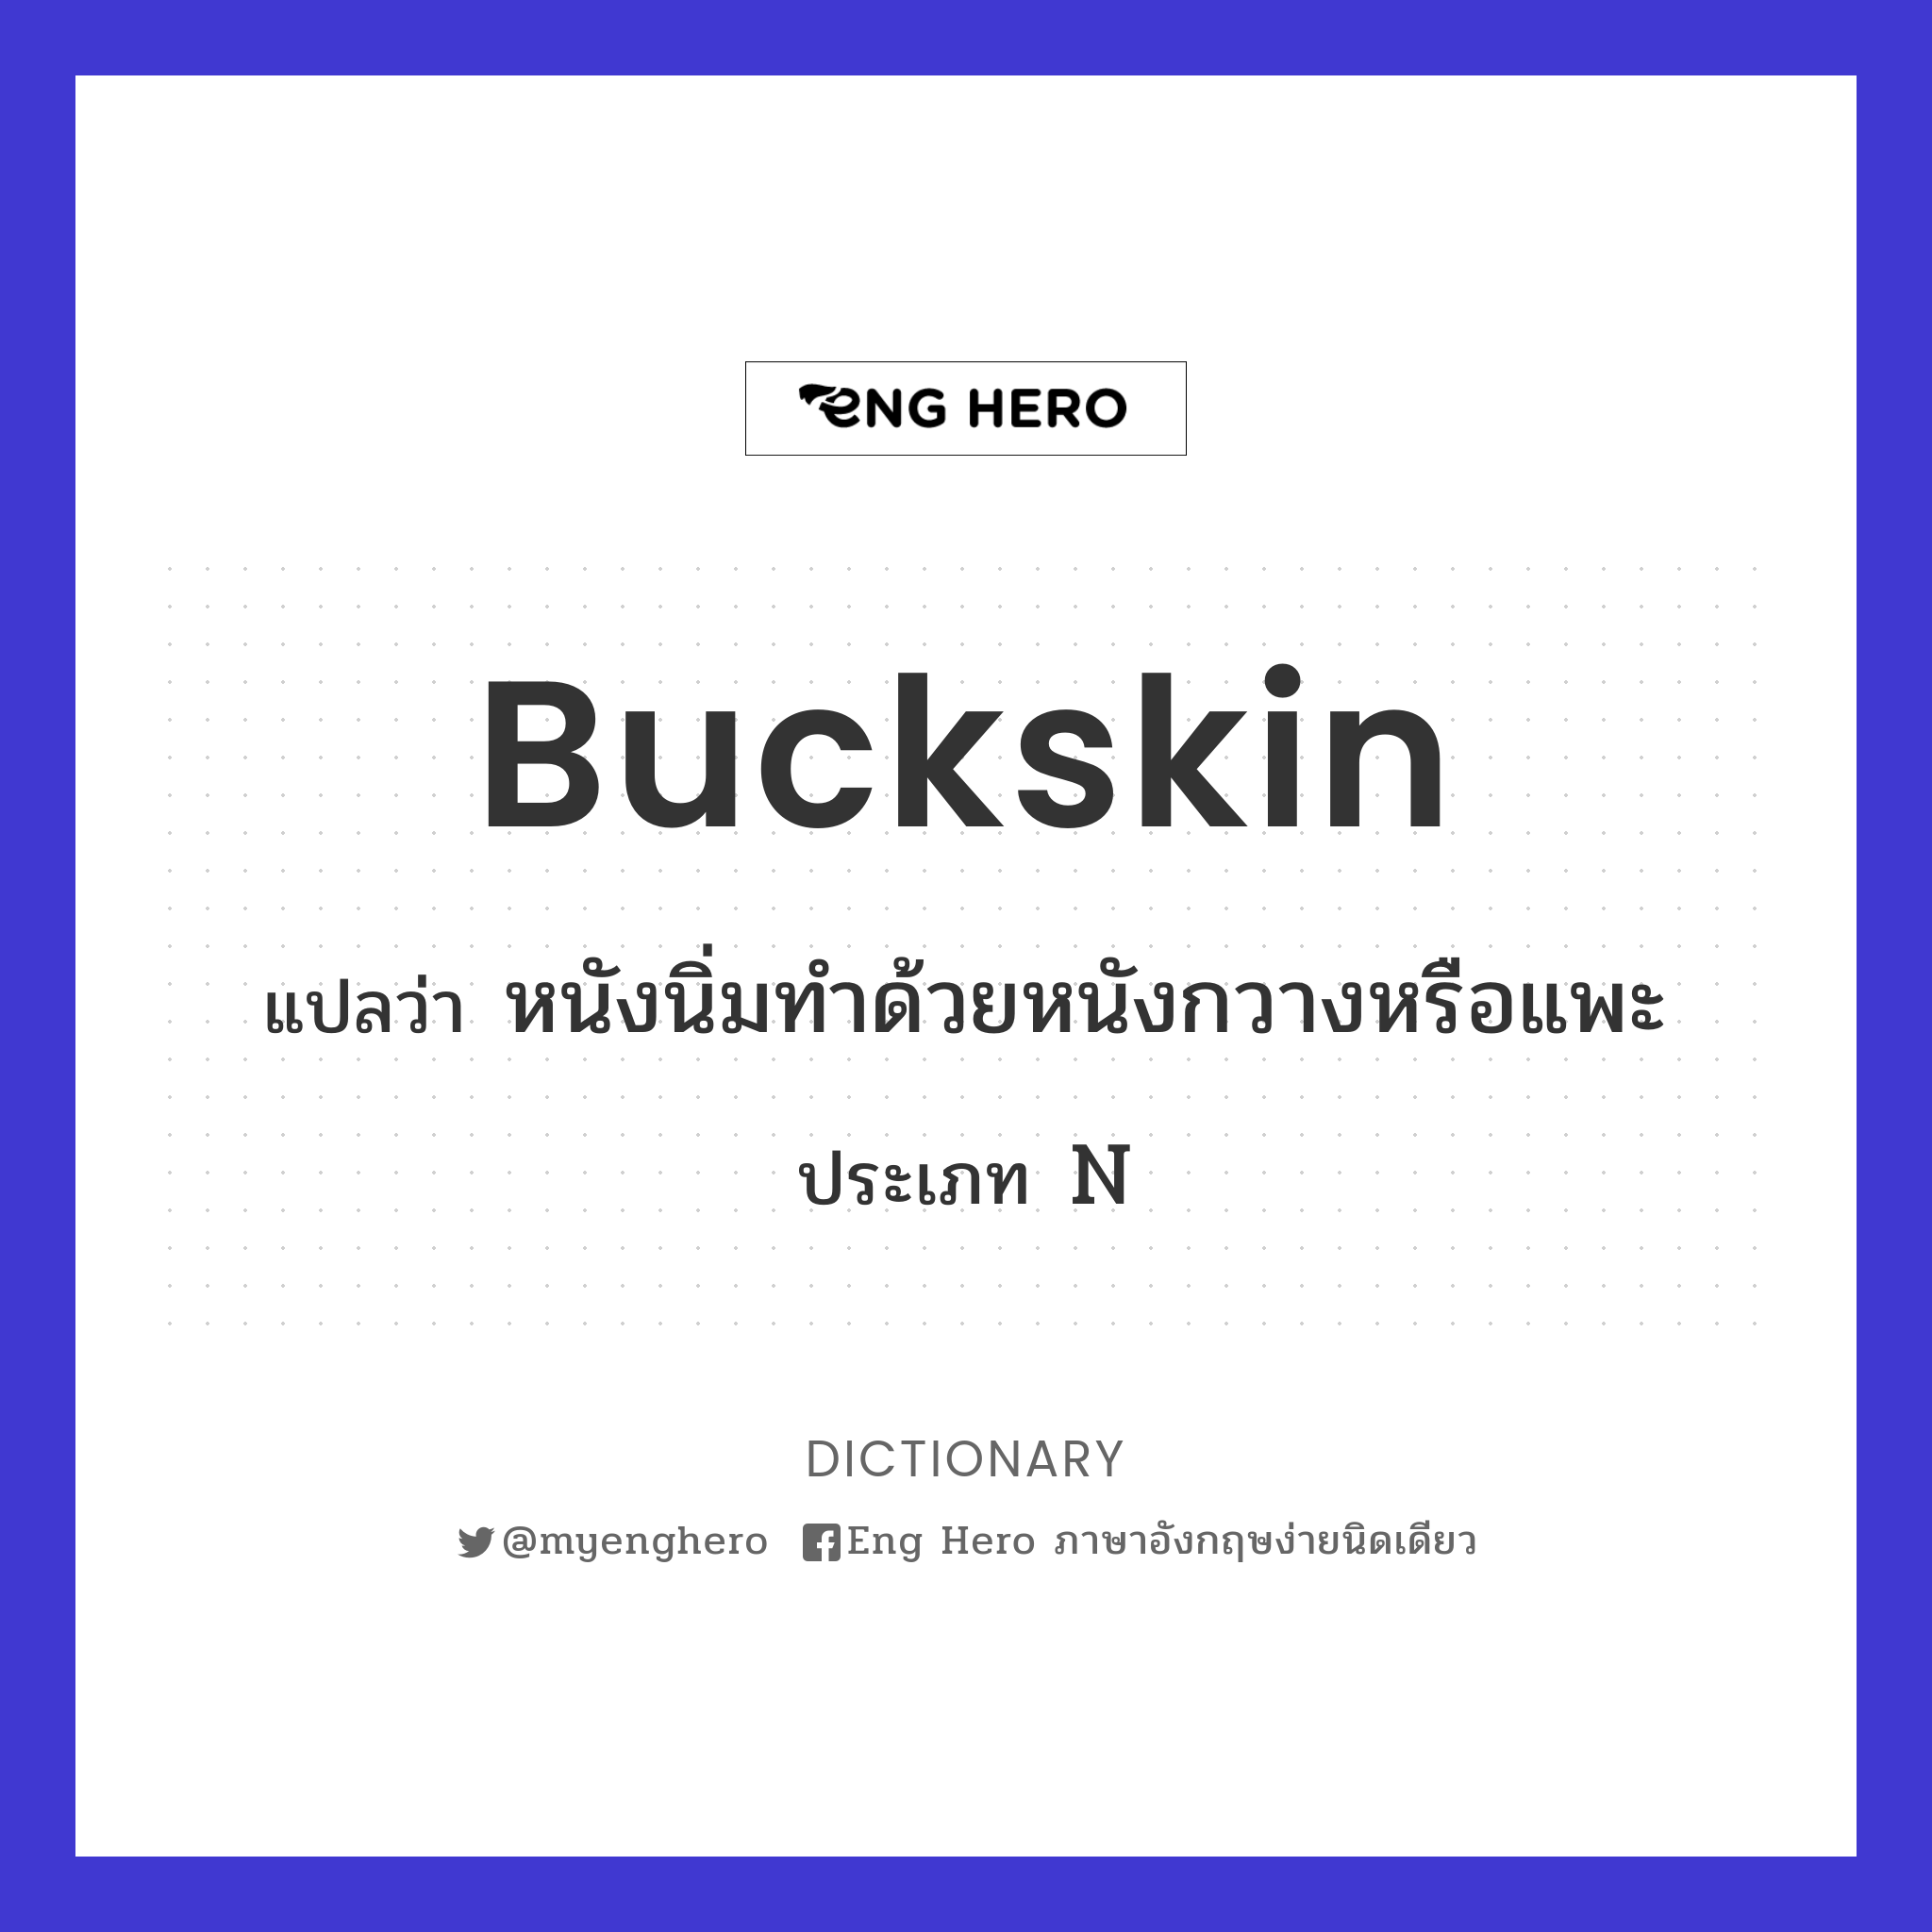 buckskin